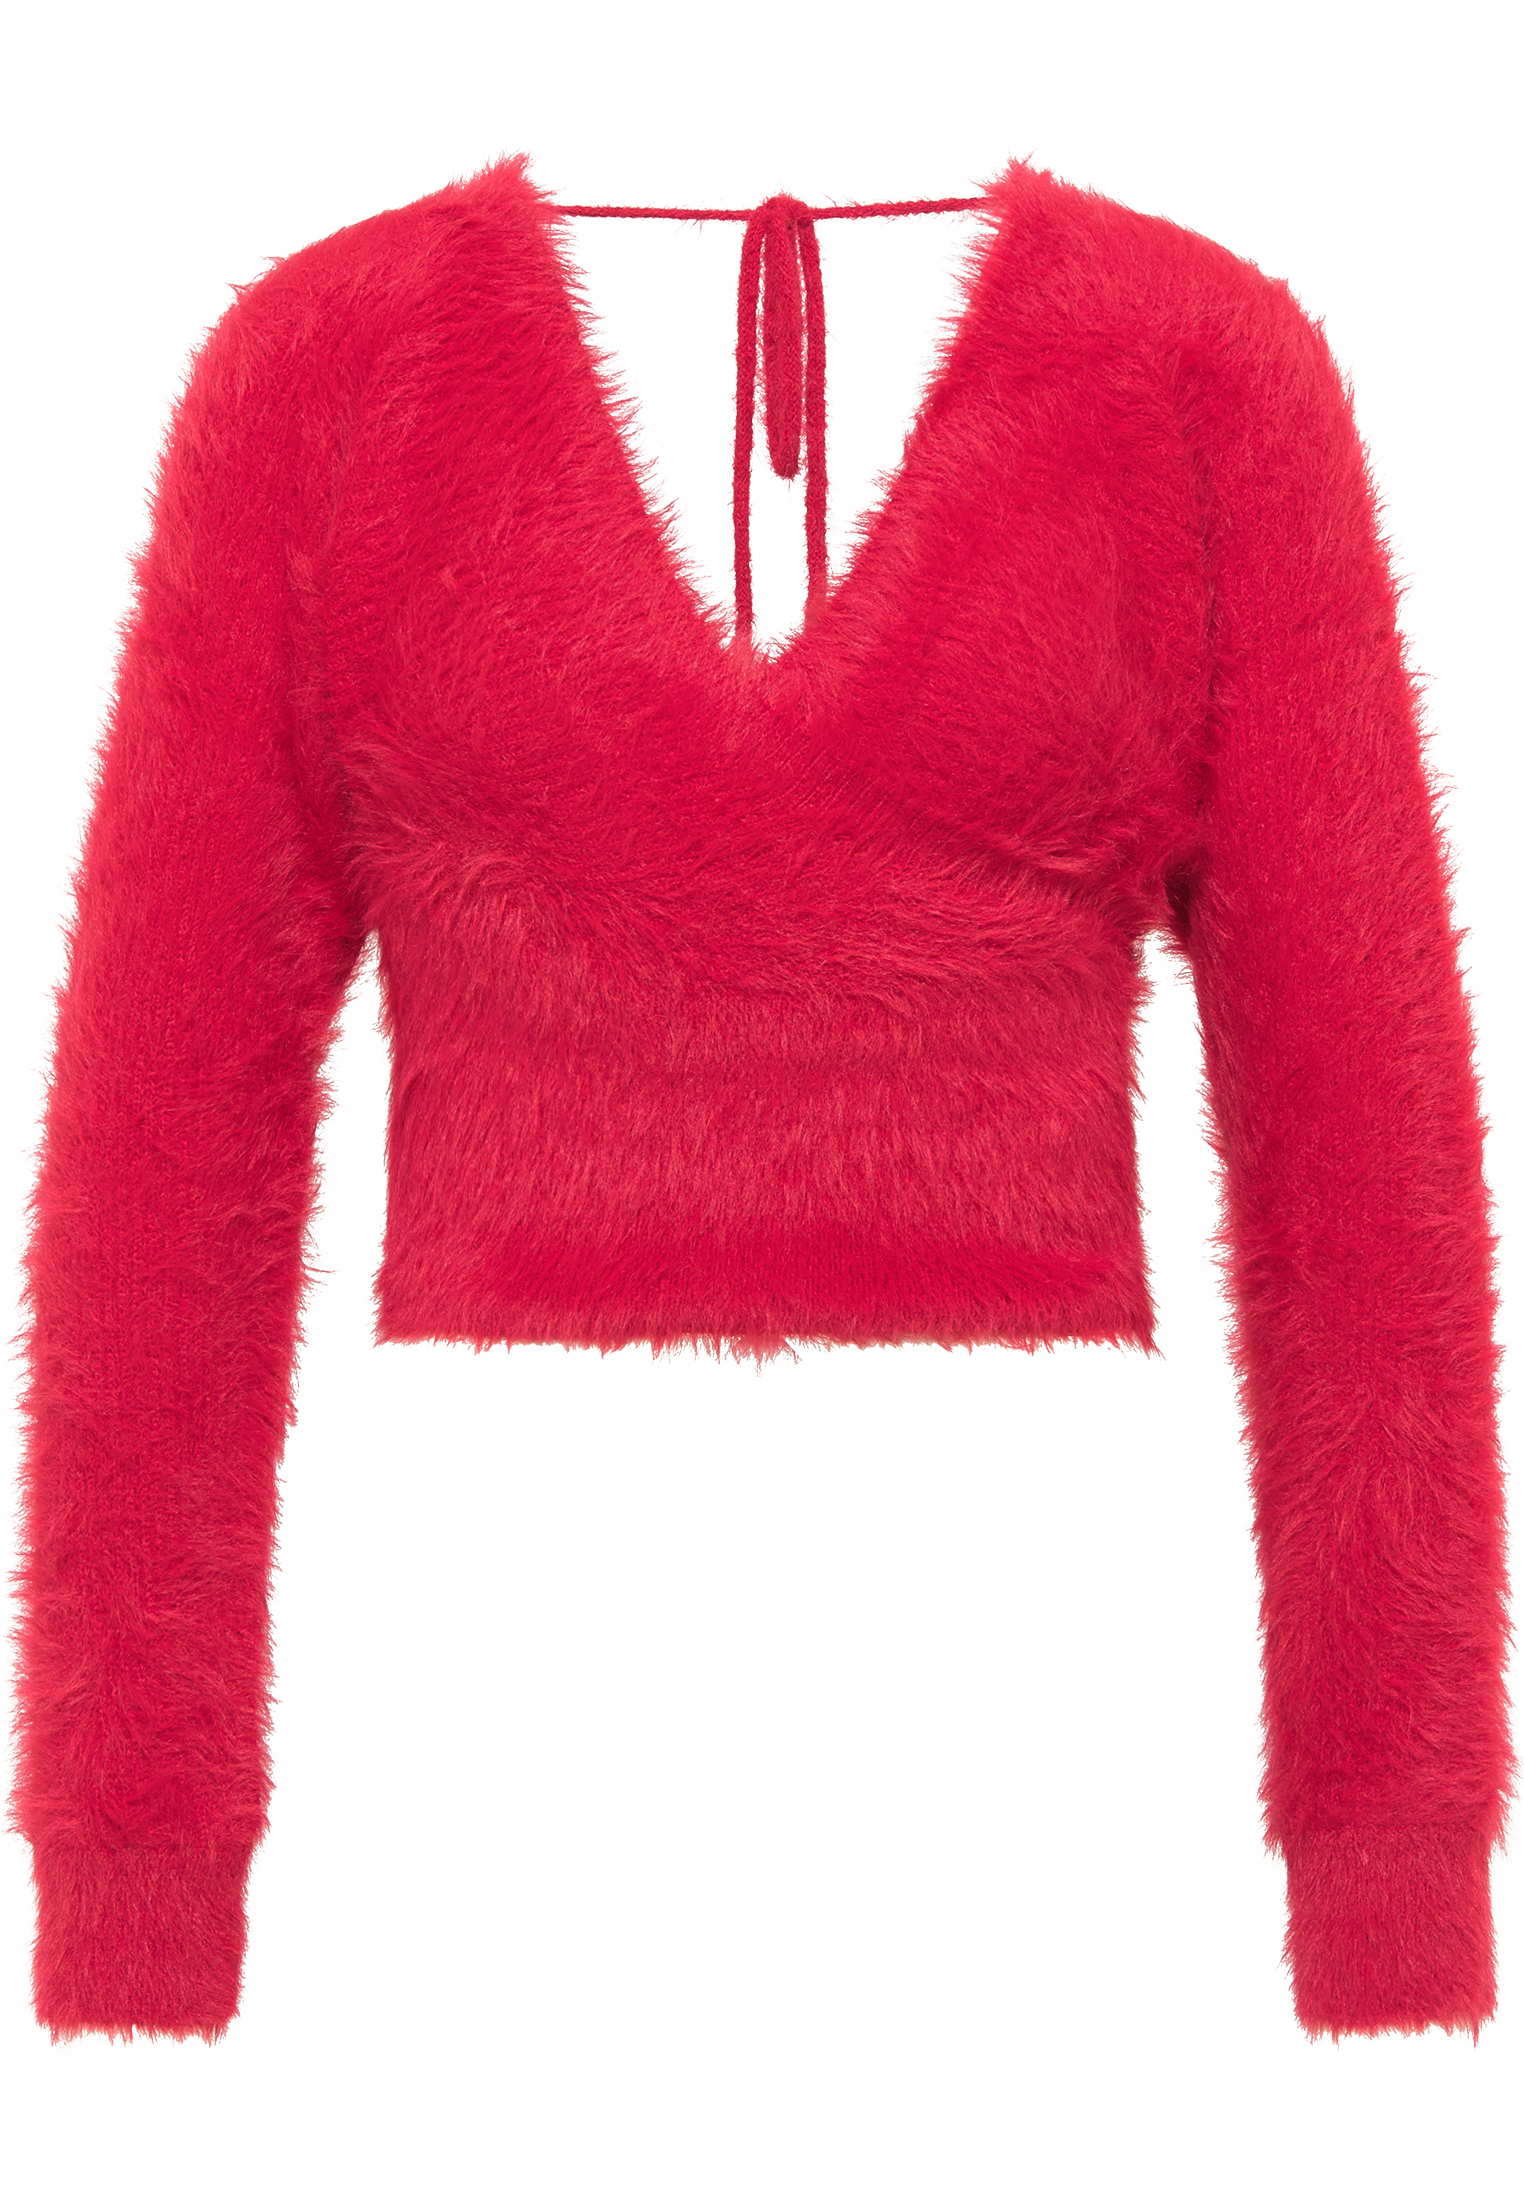 Odzież Kobiety faina Sweter w kolorze Różowym 